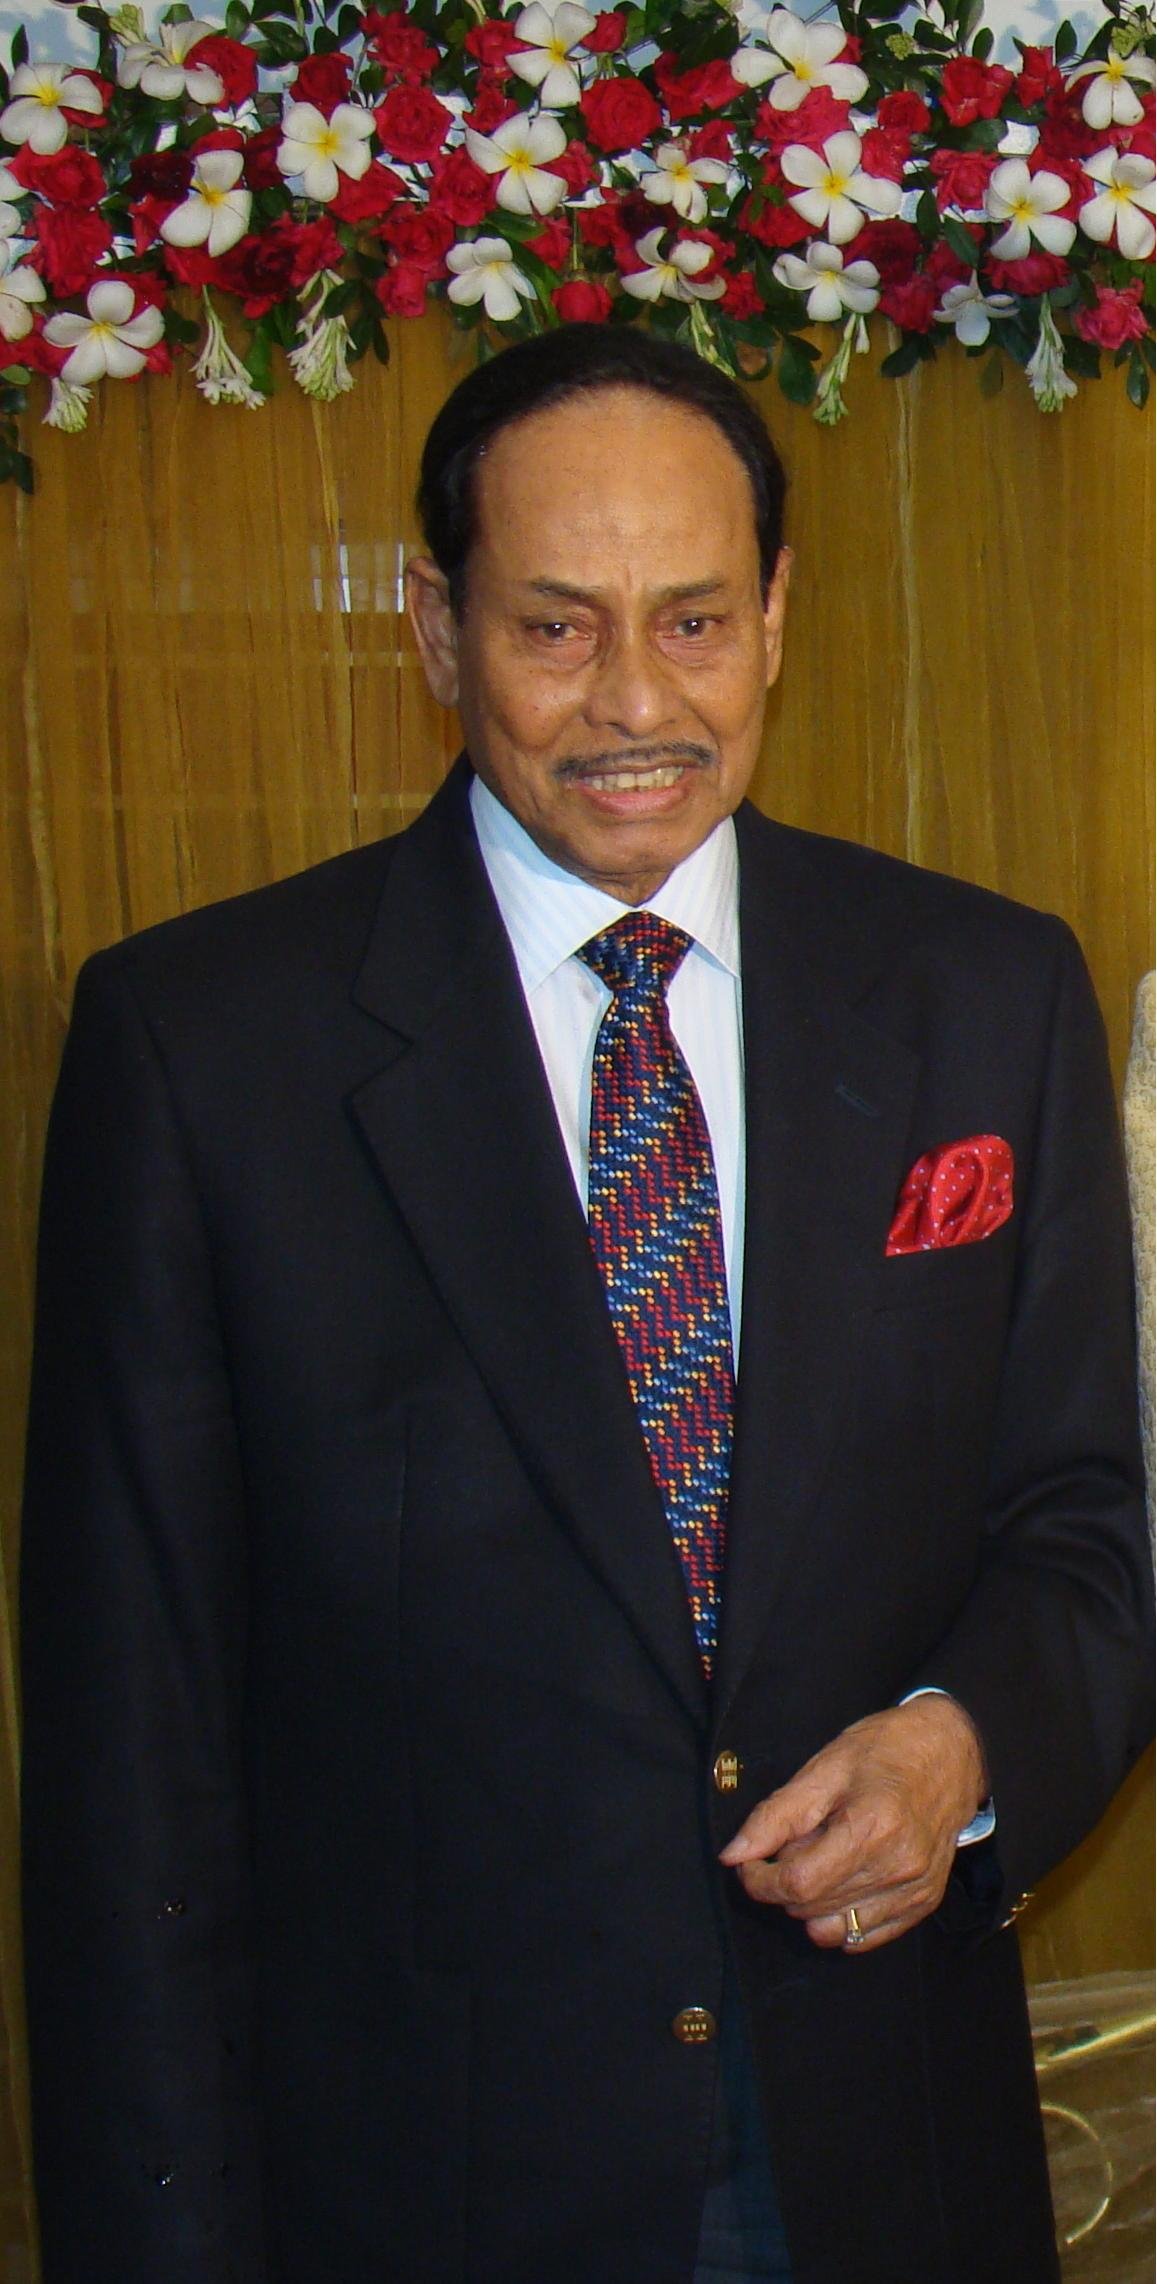 Hussain Muhammad Ershad